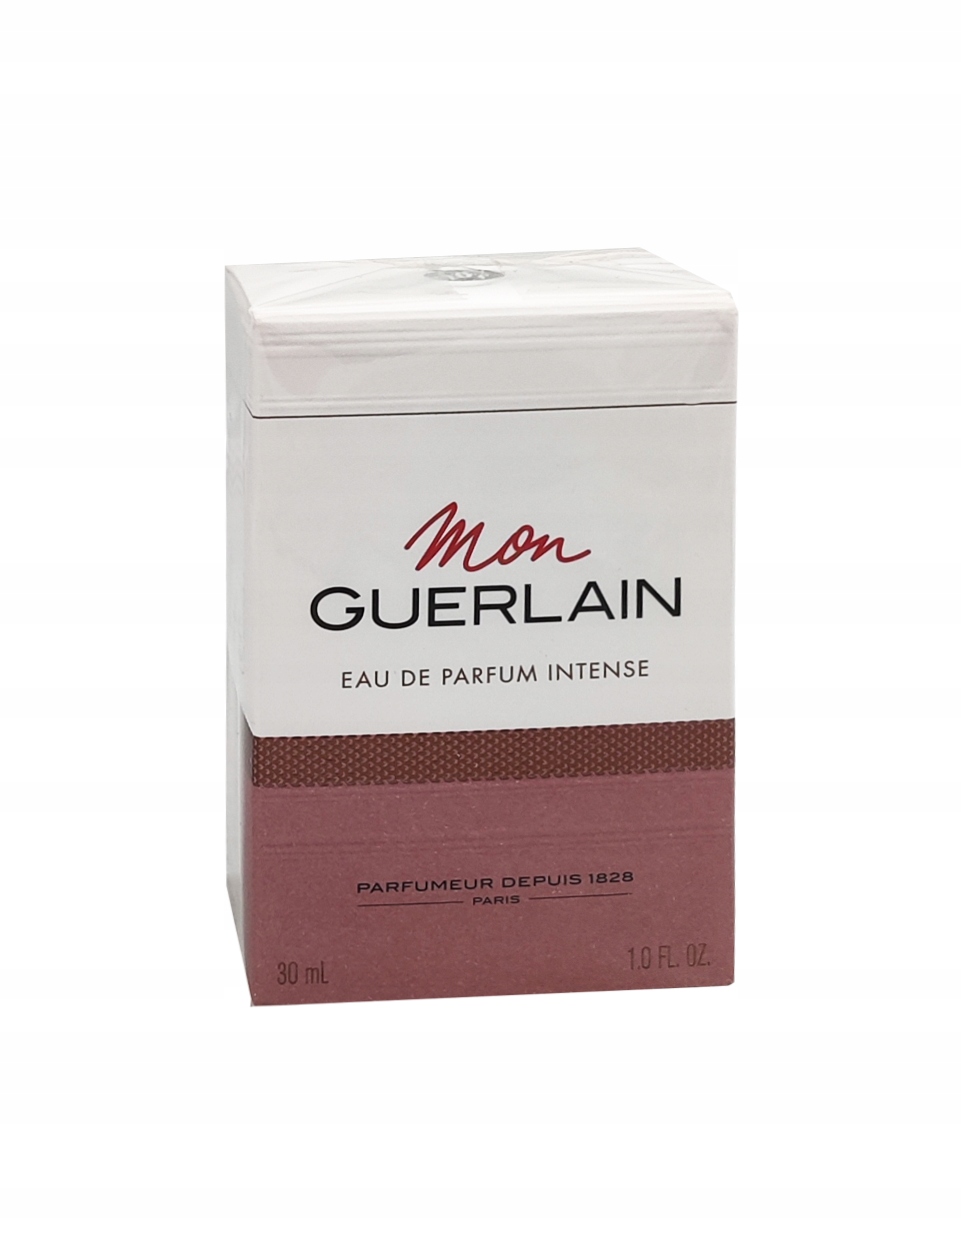 Guerlain Mon Intense Woda Perfumowana 30ml